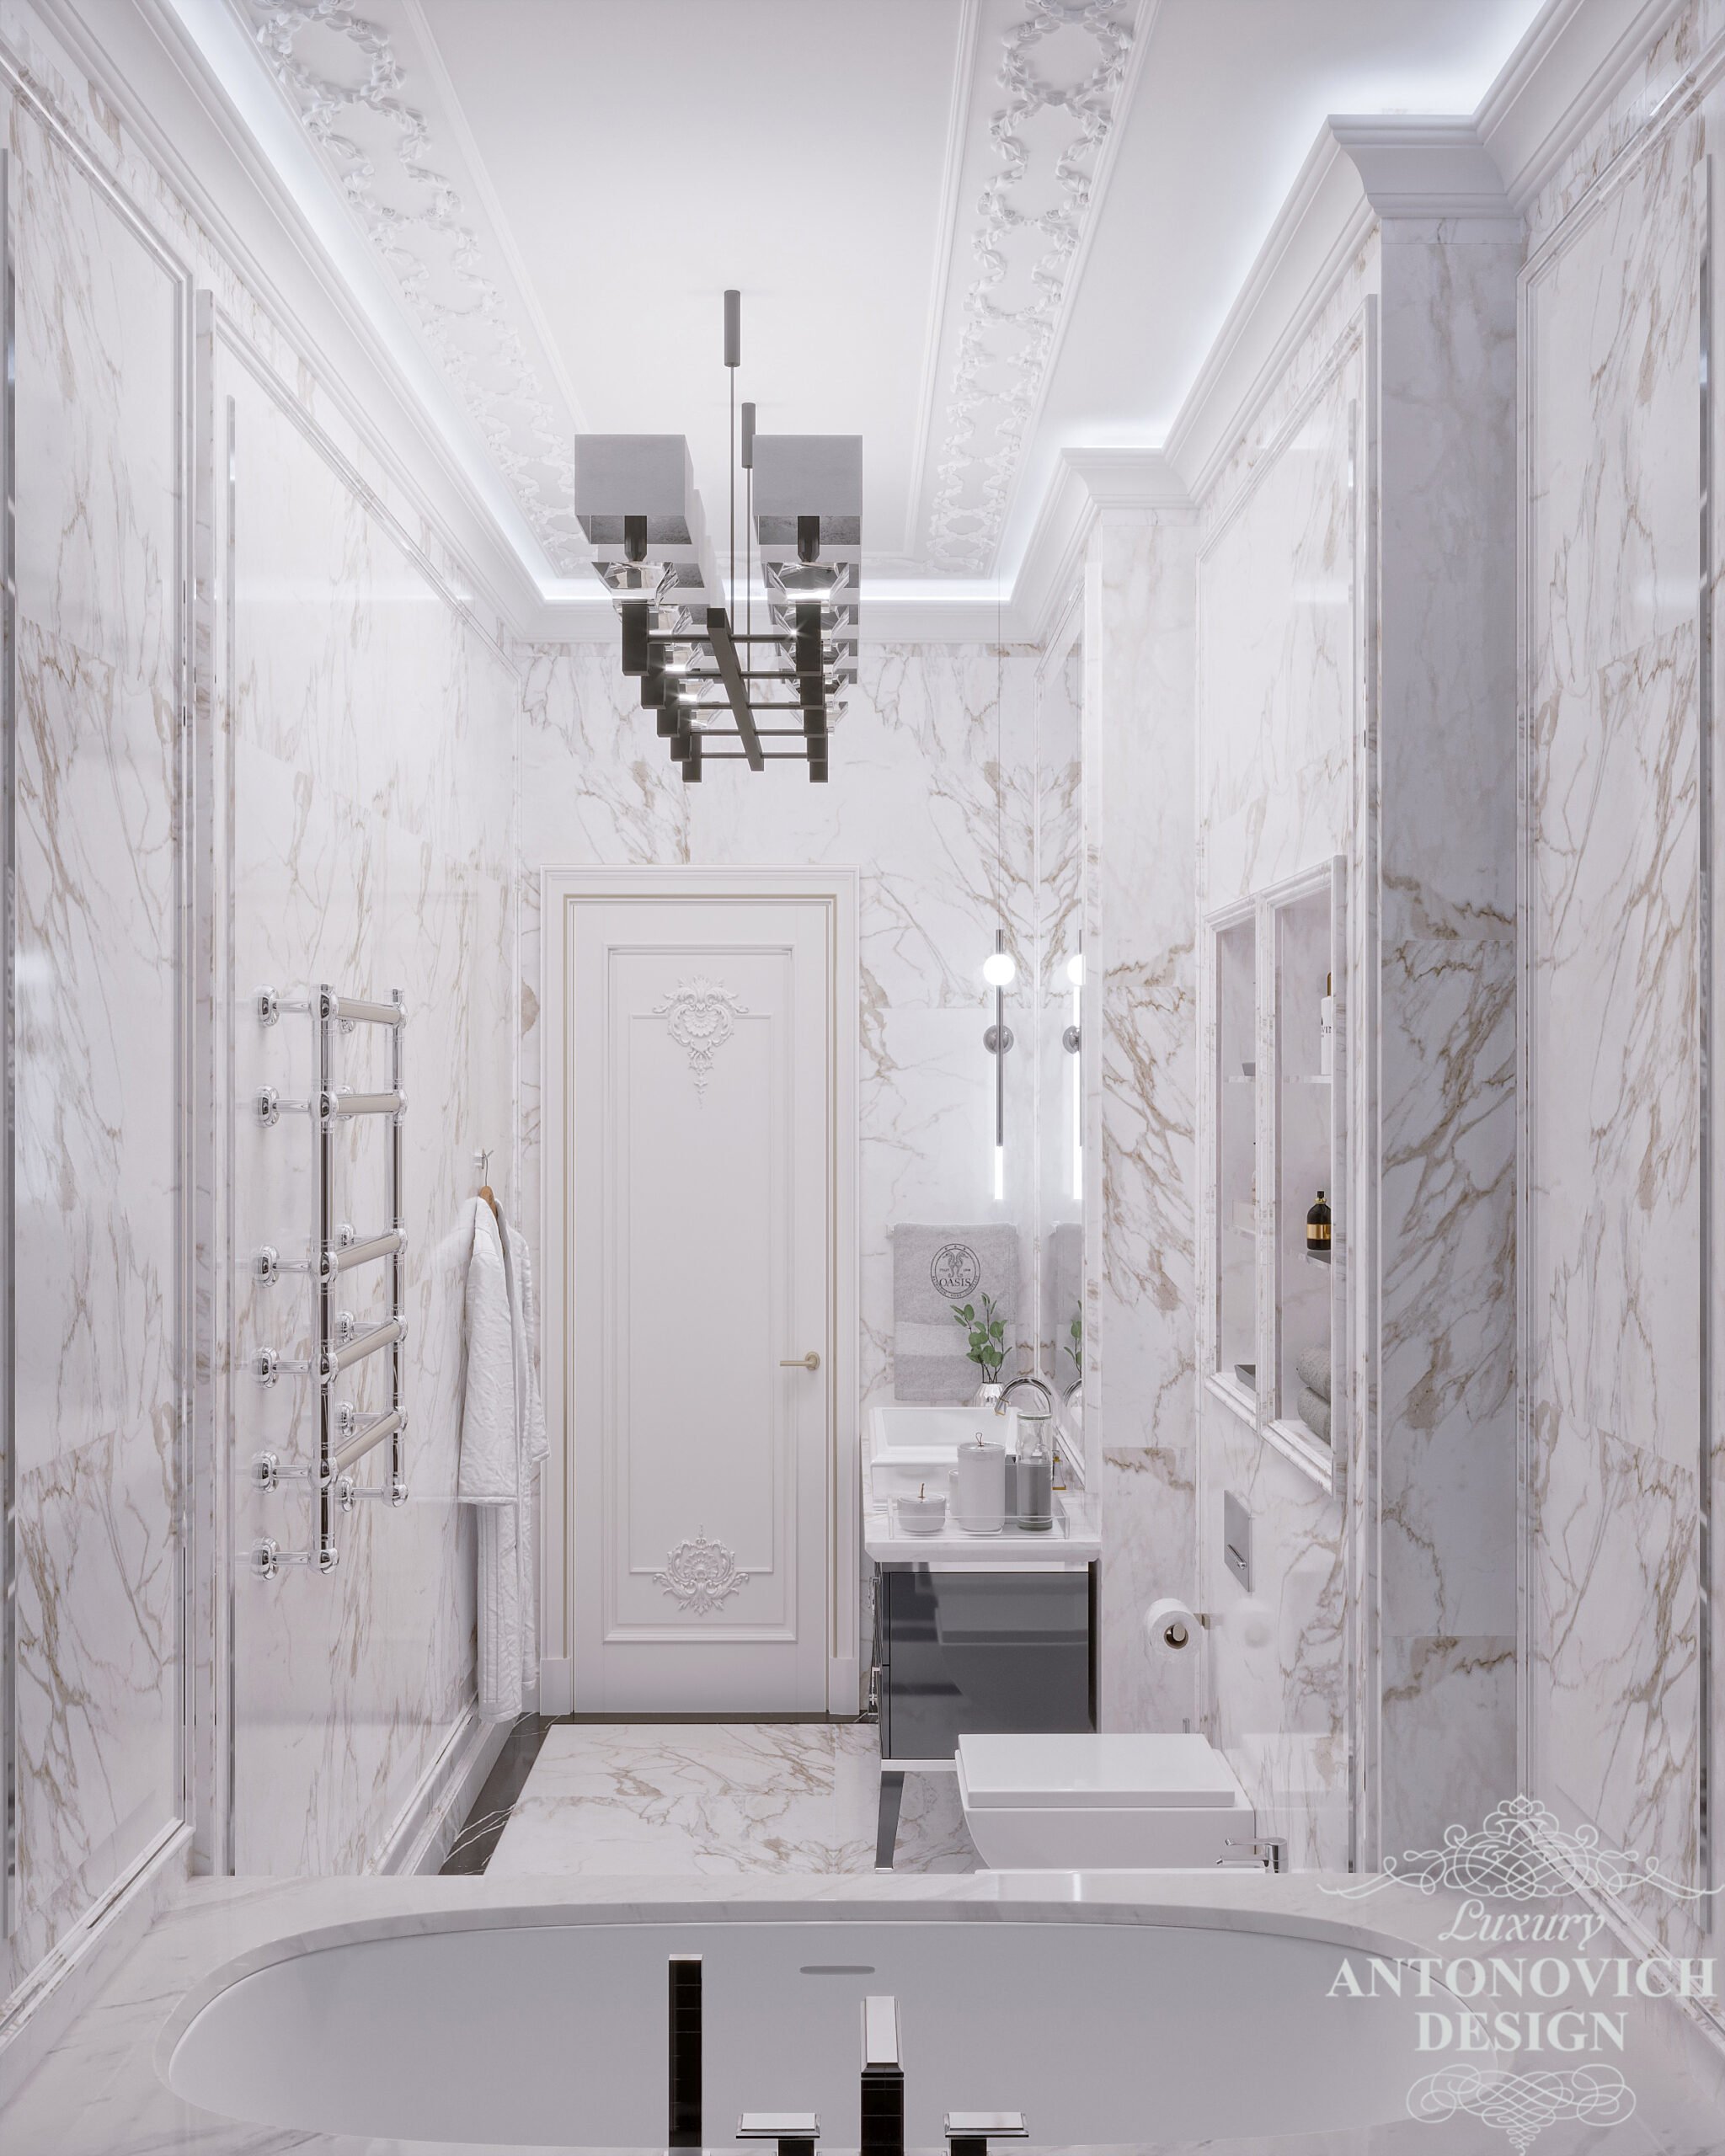 Дизайн сучасної ванної з високими стелями в стильних світлих відтінках і витонченим декором